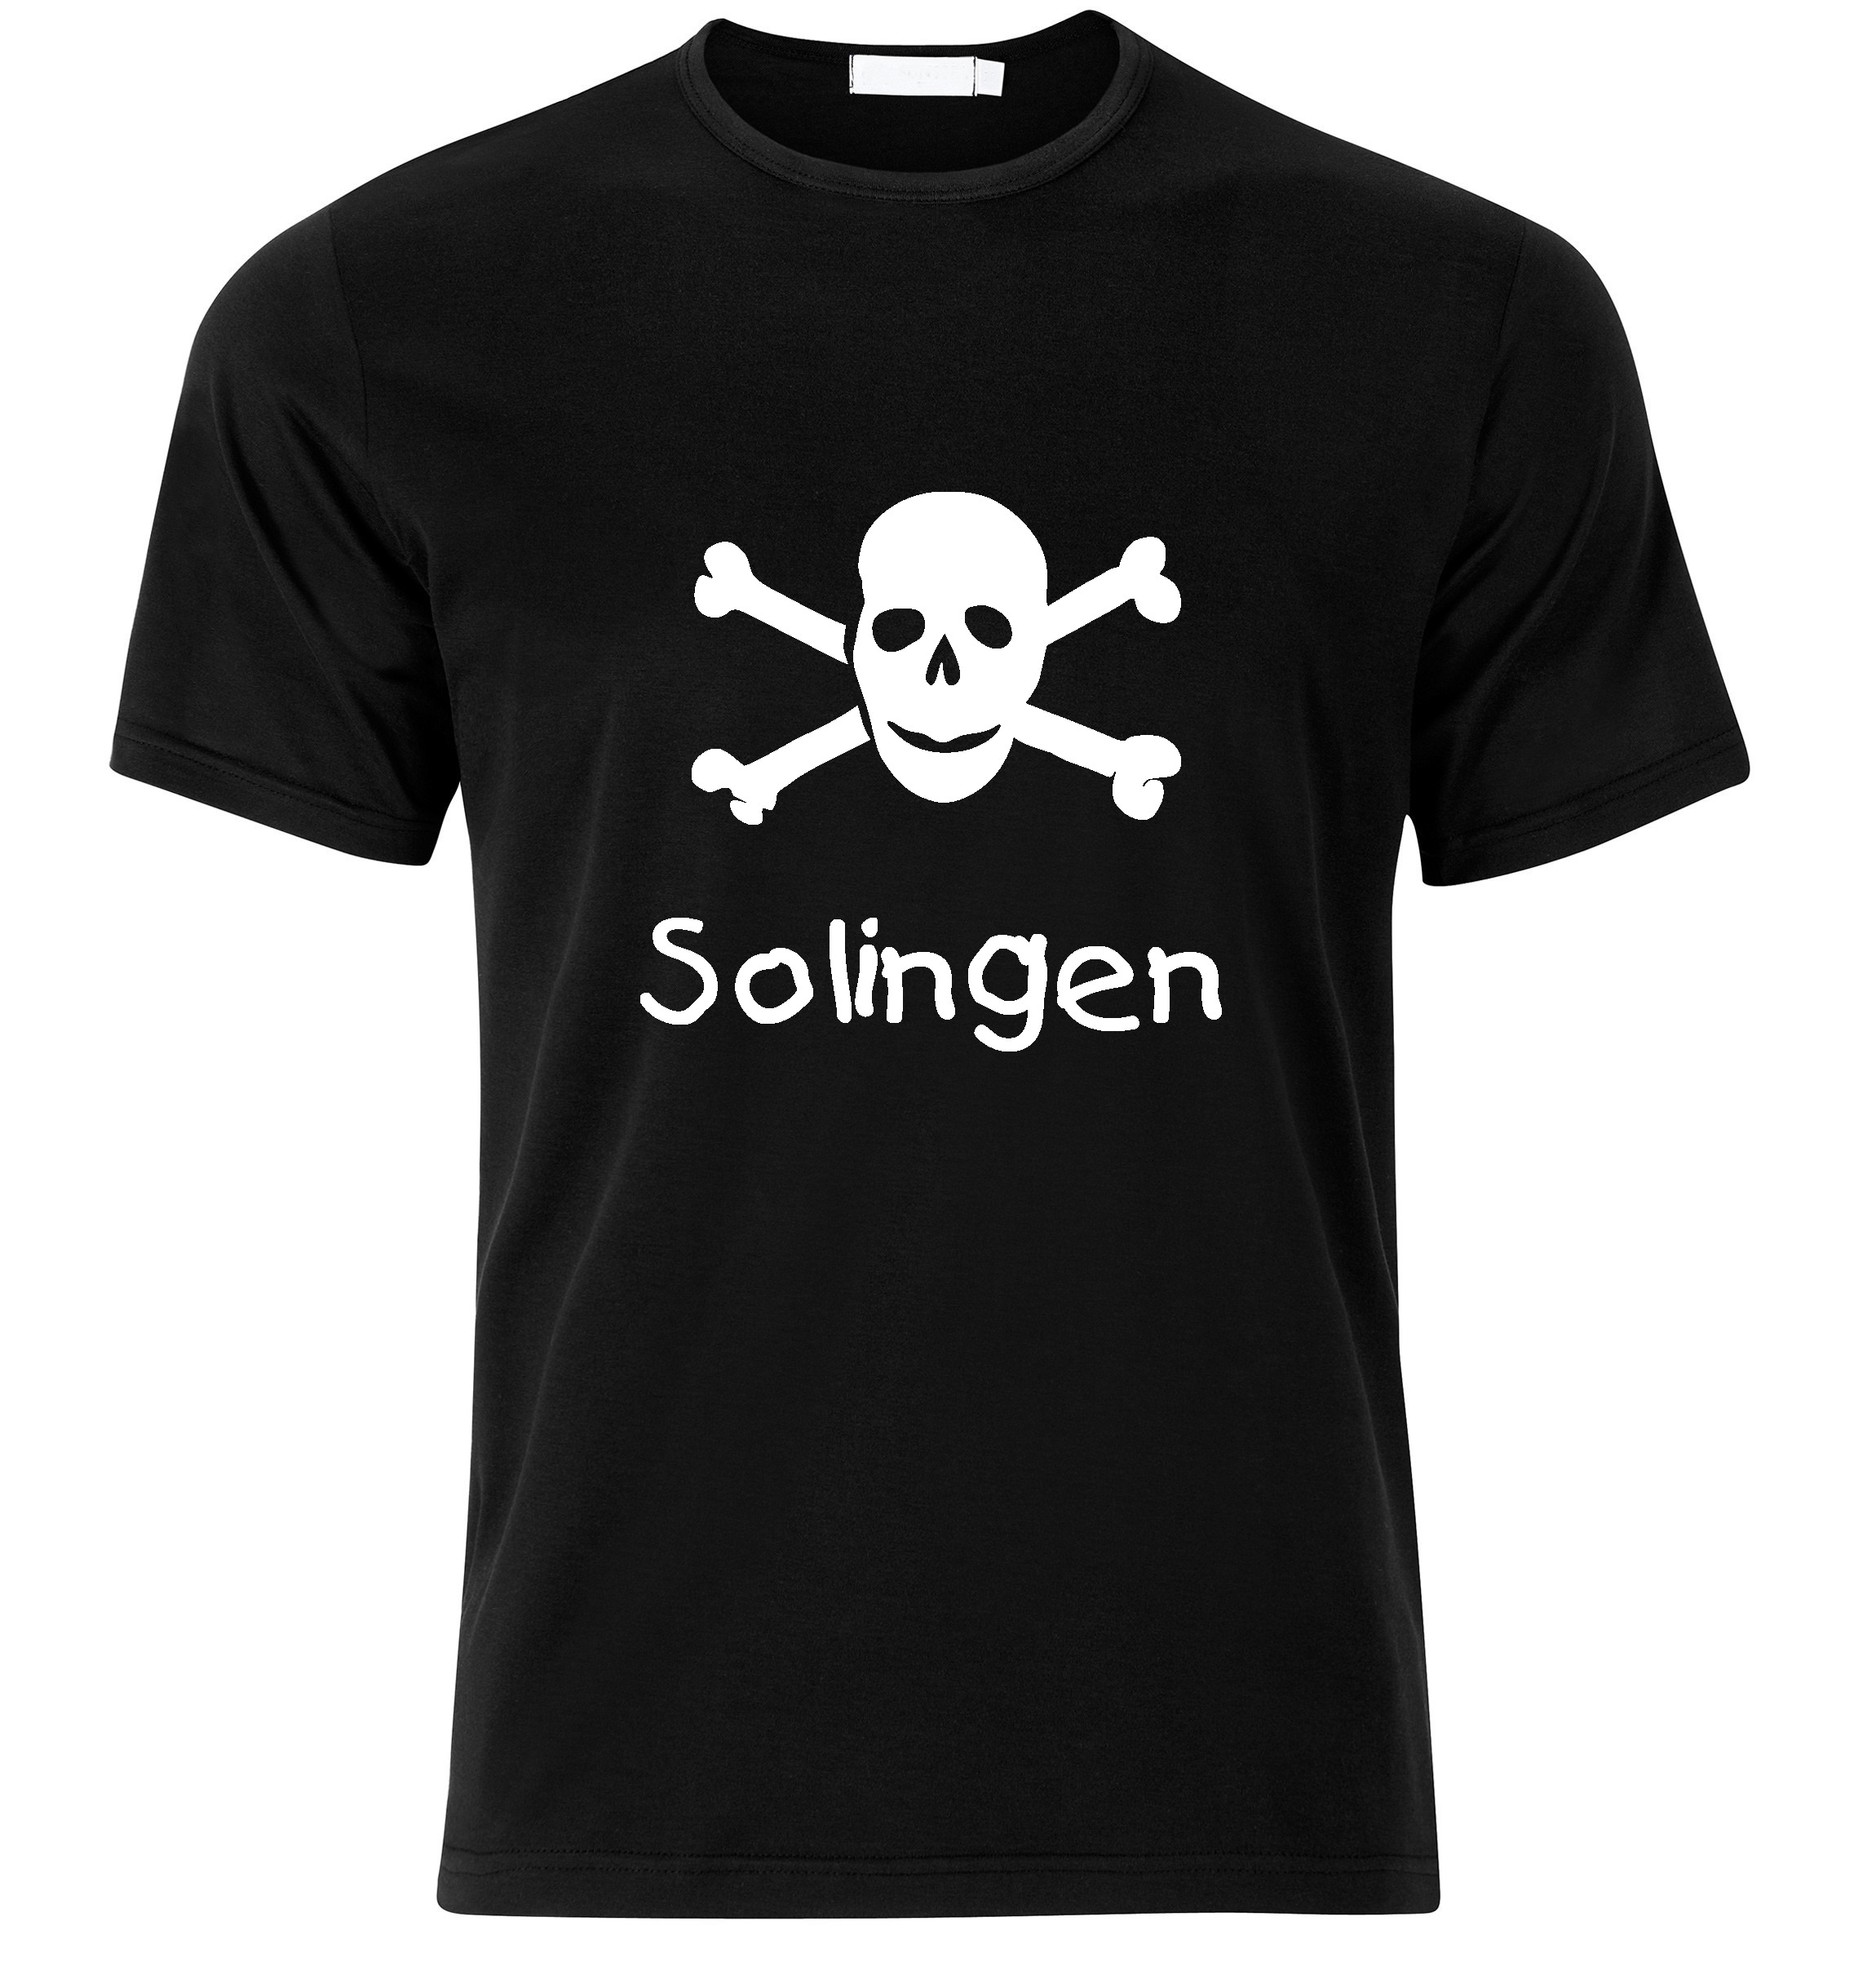 T-Shirt Solingen Jolly Roger, Totenkopf